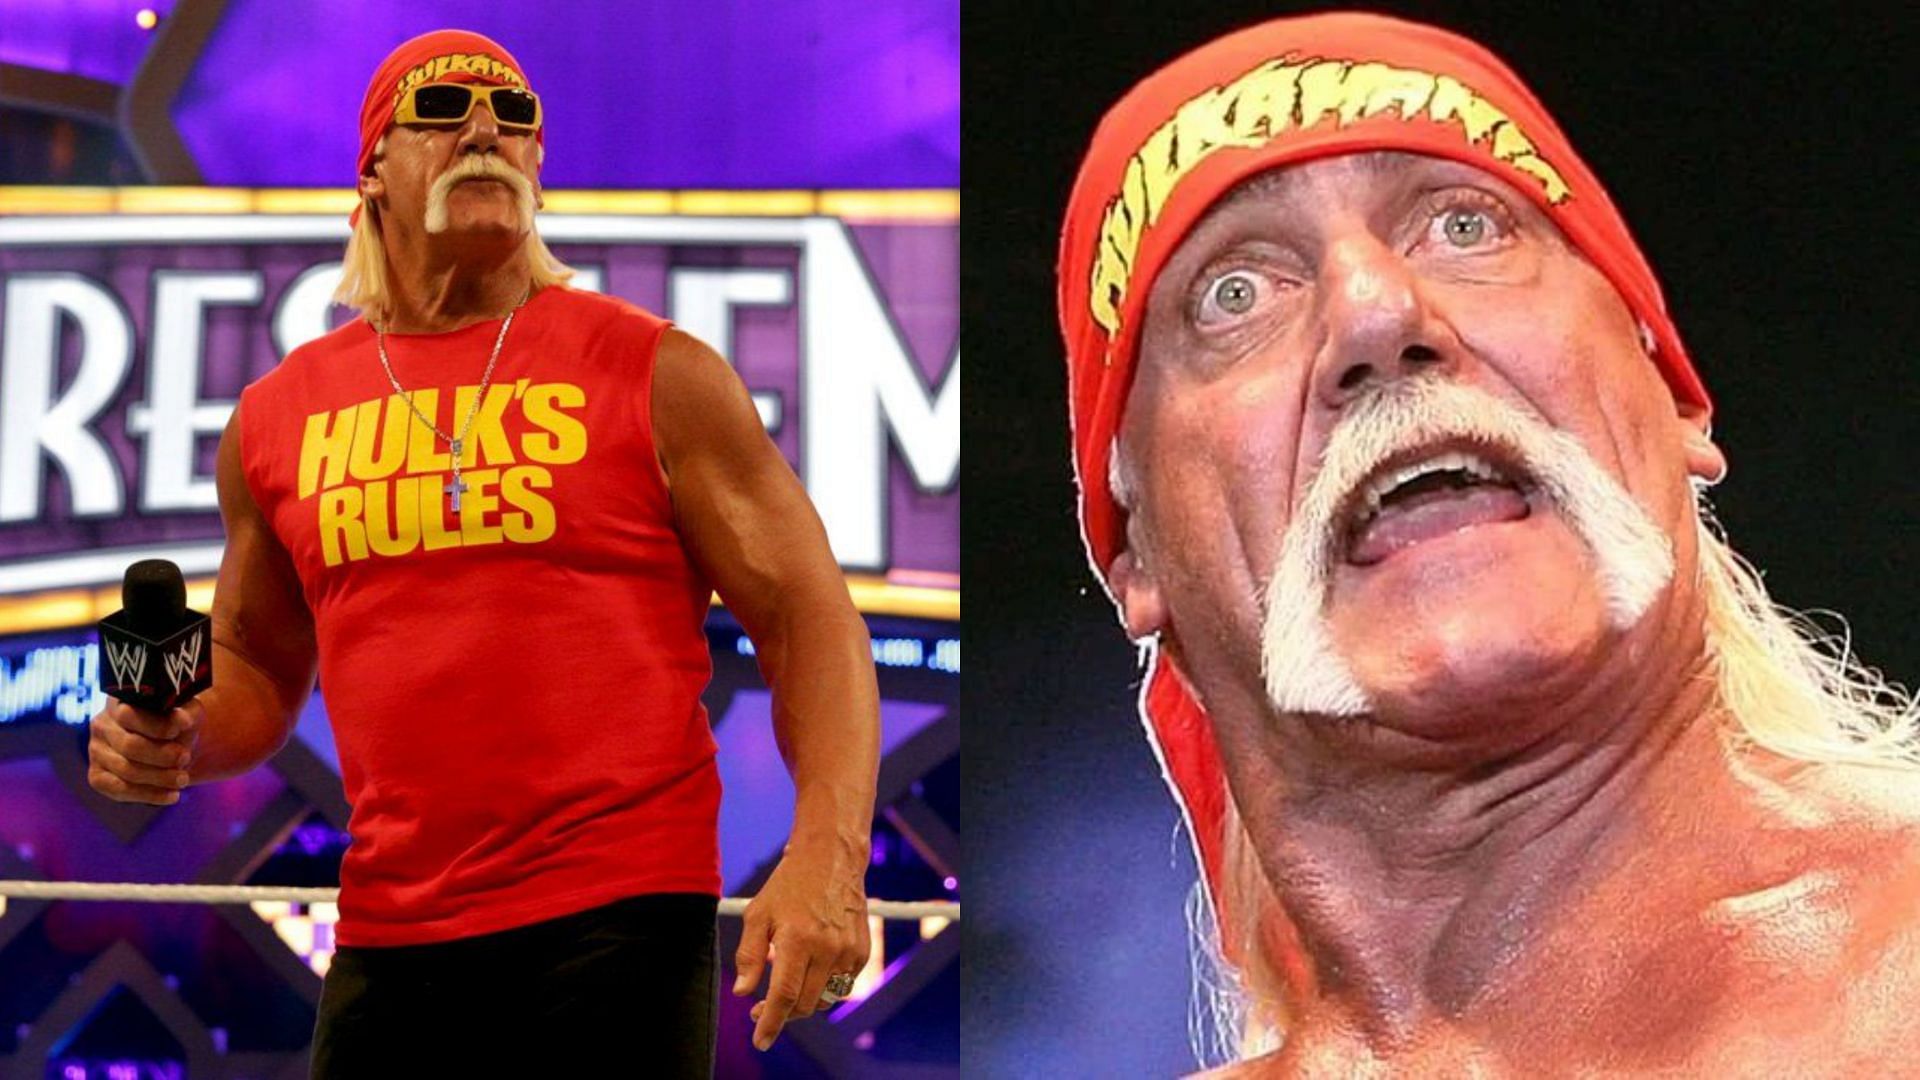 The Iron Sheik took another shot at Hulk Hogan